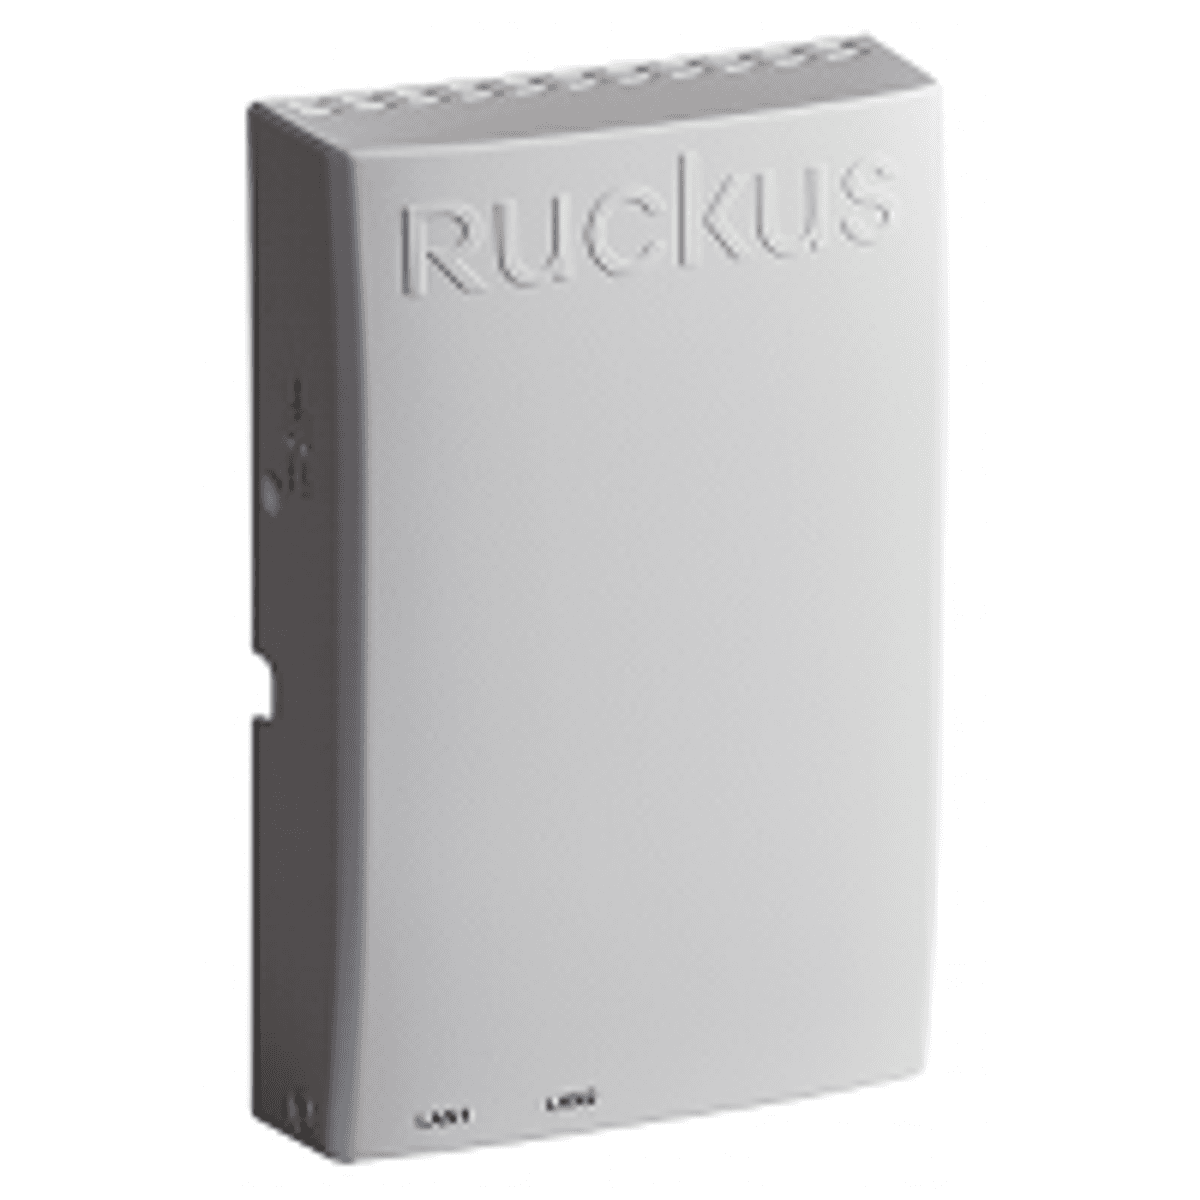 Ruckus lanceert H320 all-in-one AP en switch voor hotelbranche image